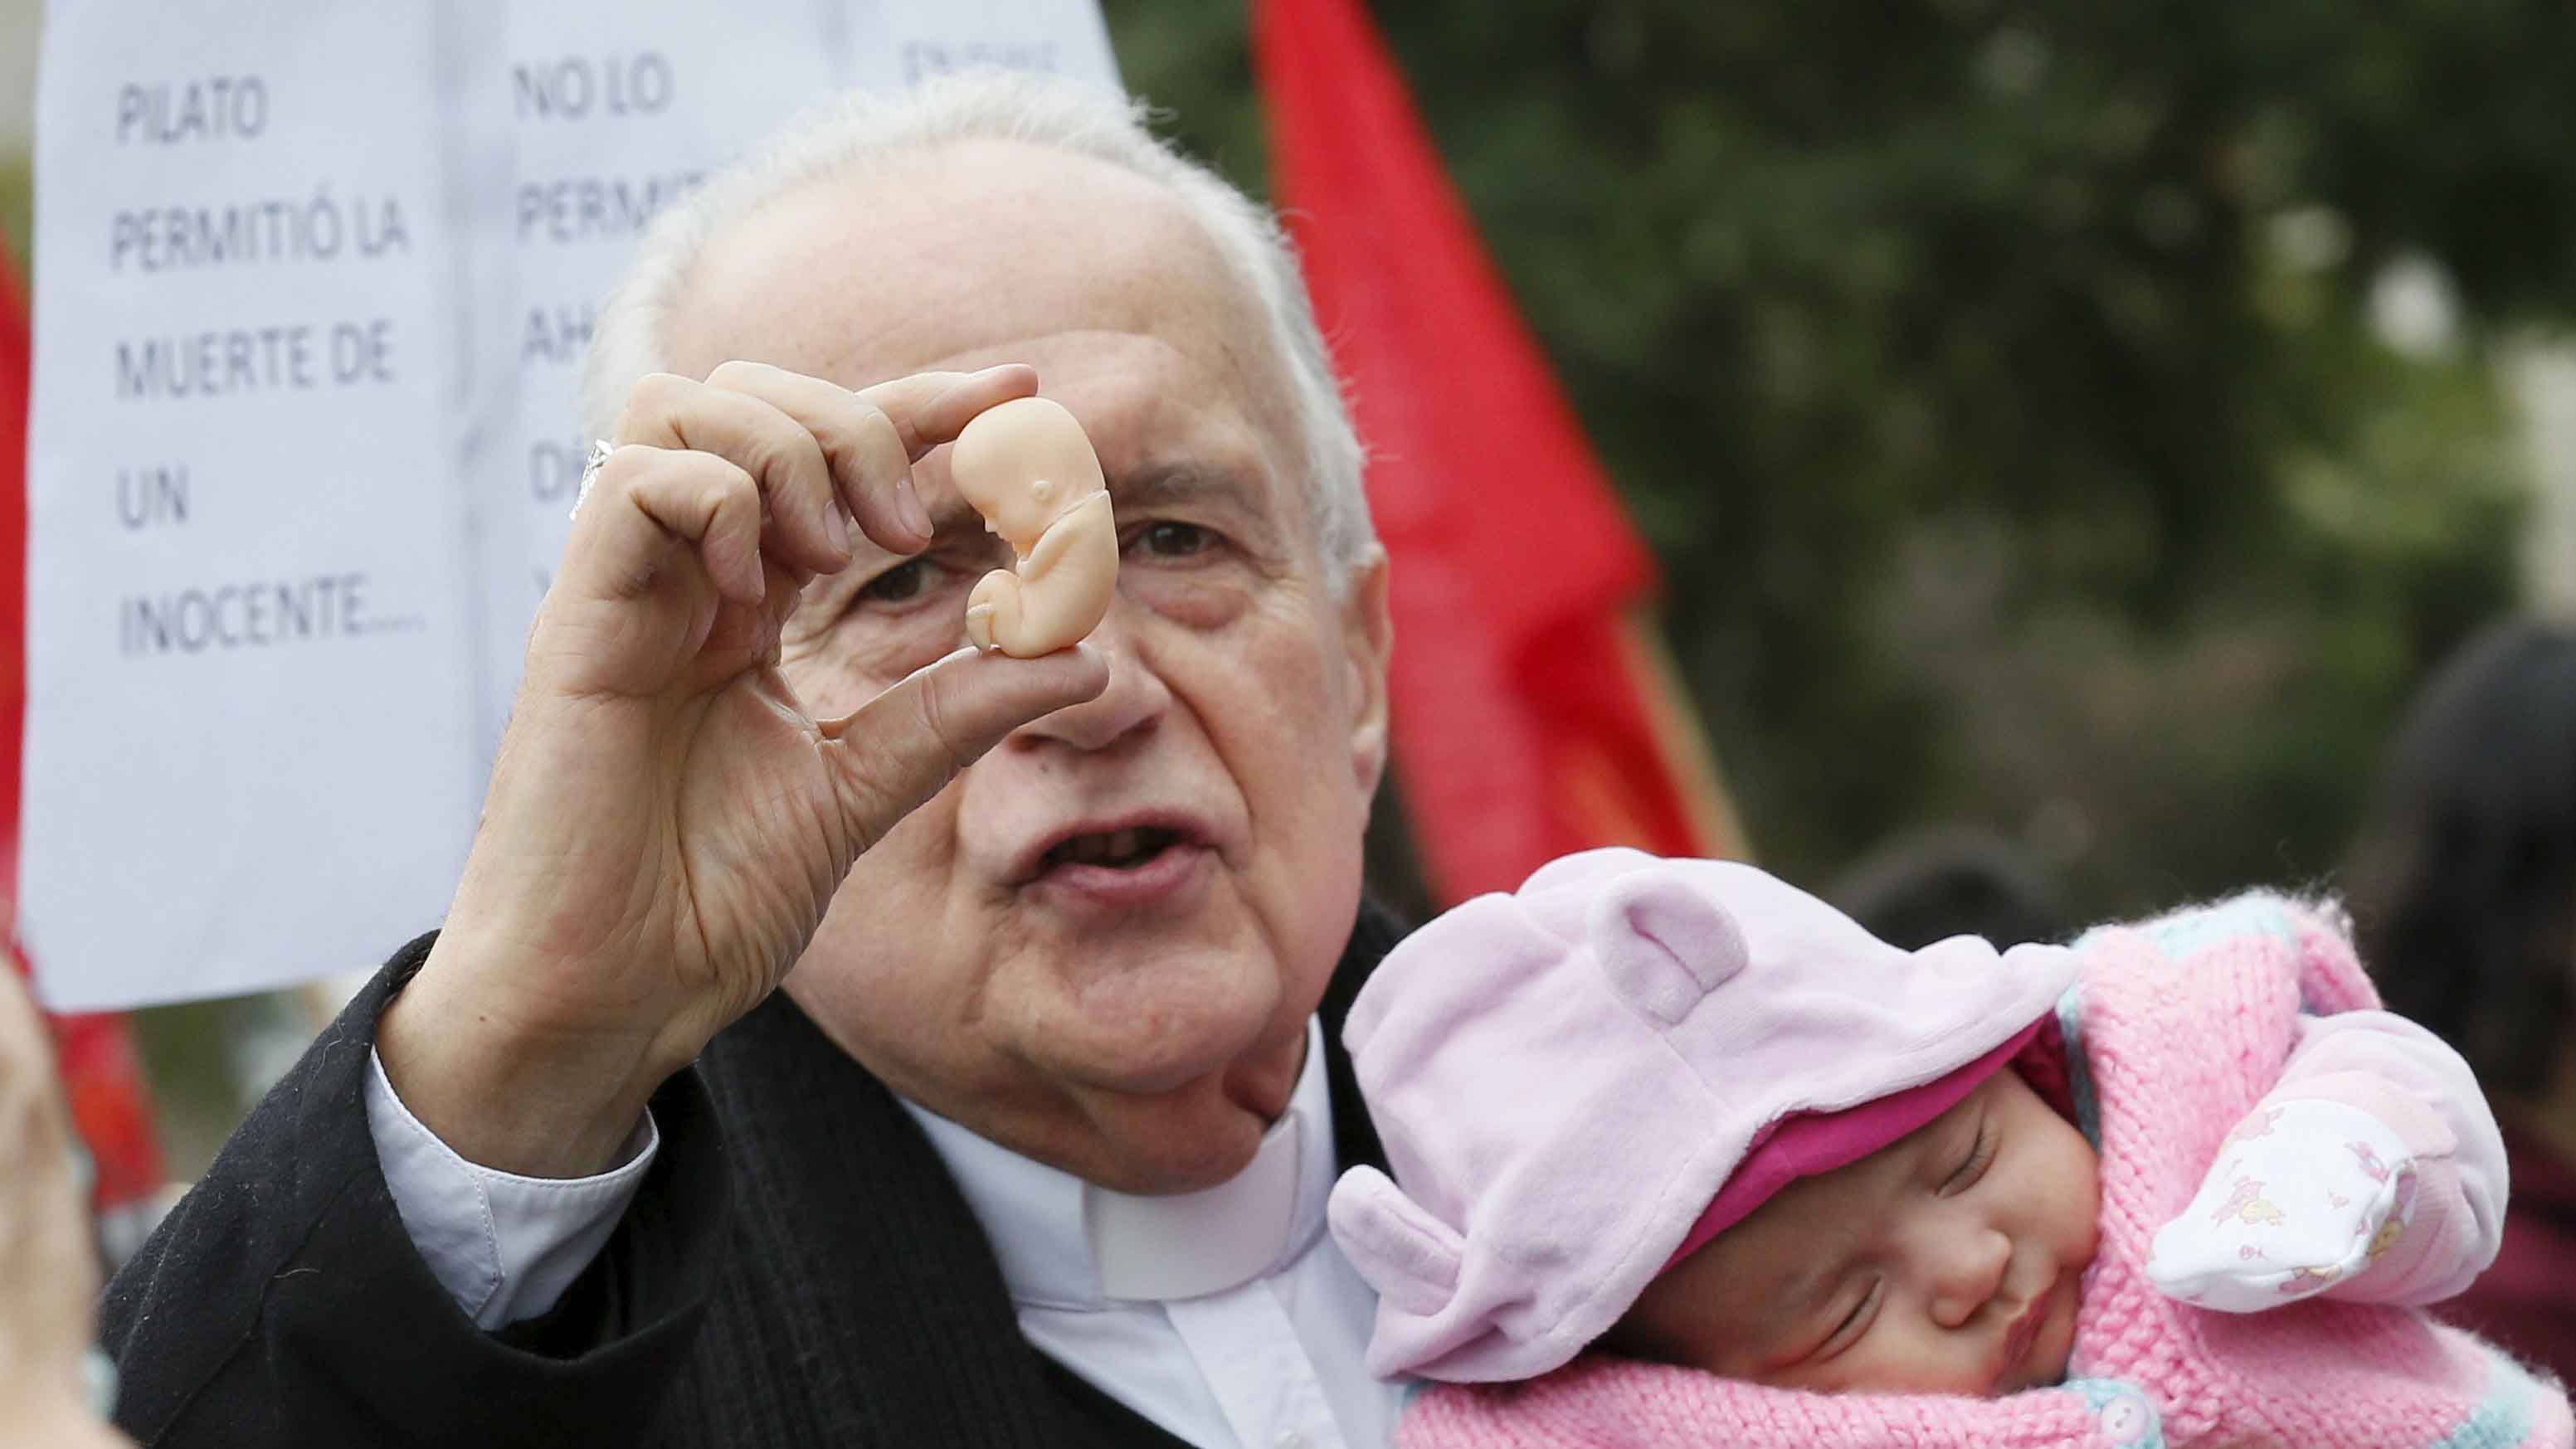 El arzobispo Ricardo Ezzati, abogó por el "inalienable derecho a la vida de quien está por nacer", pero se declaró "respetuoso" de la legislación chilena